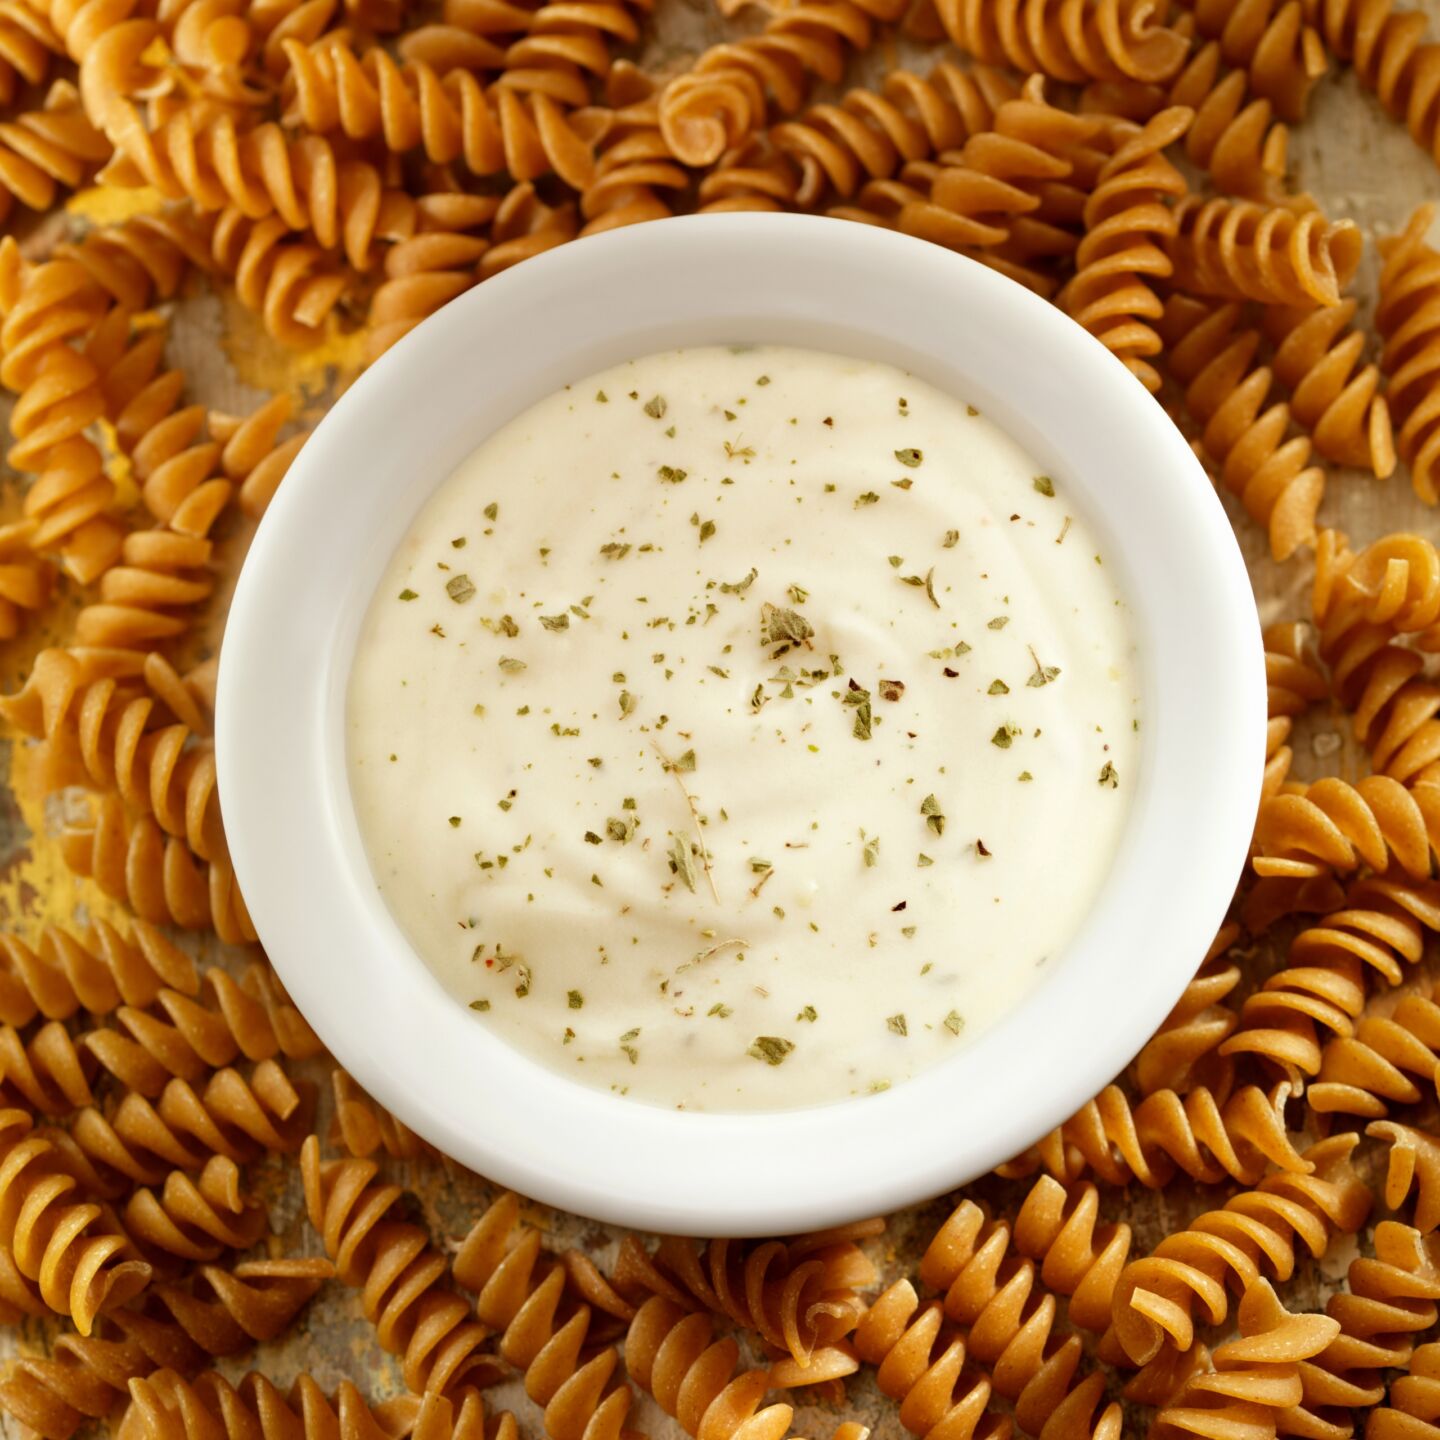 Types of pasta sauce - alfredo pasta sauce